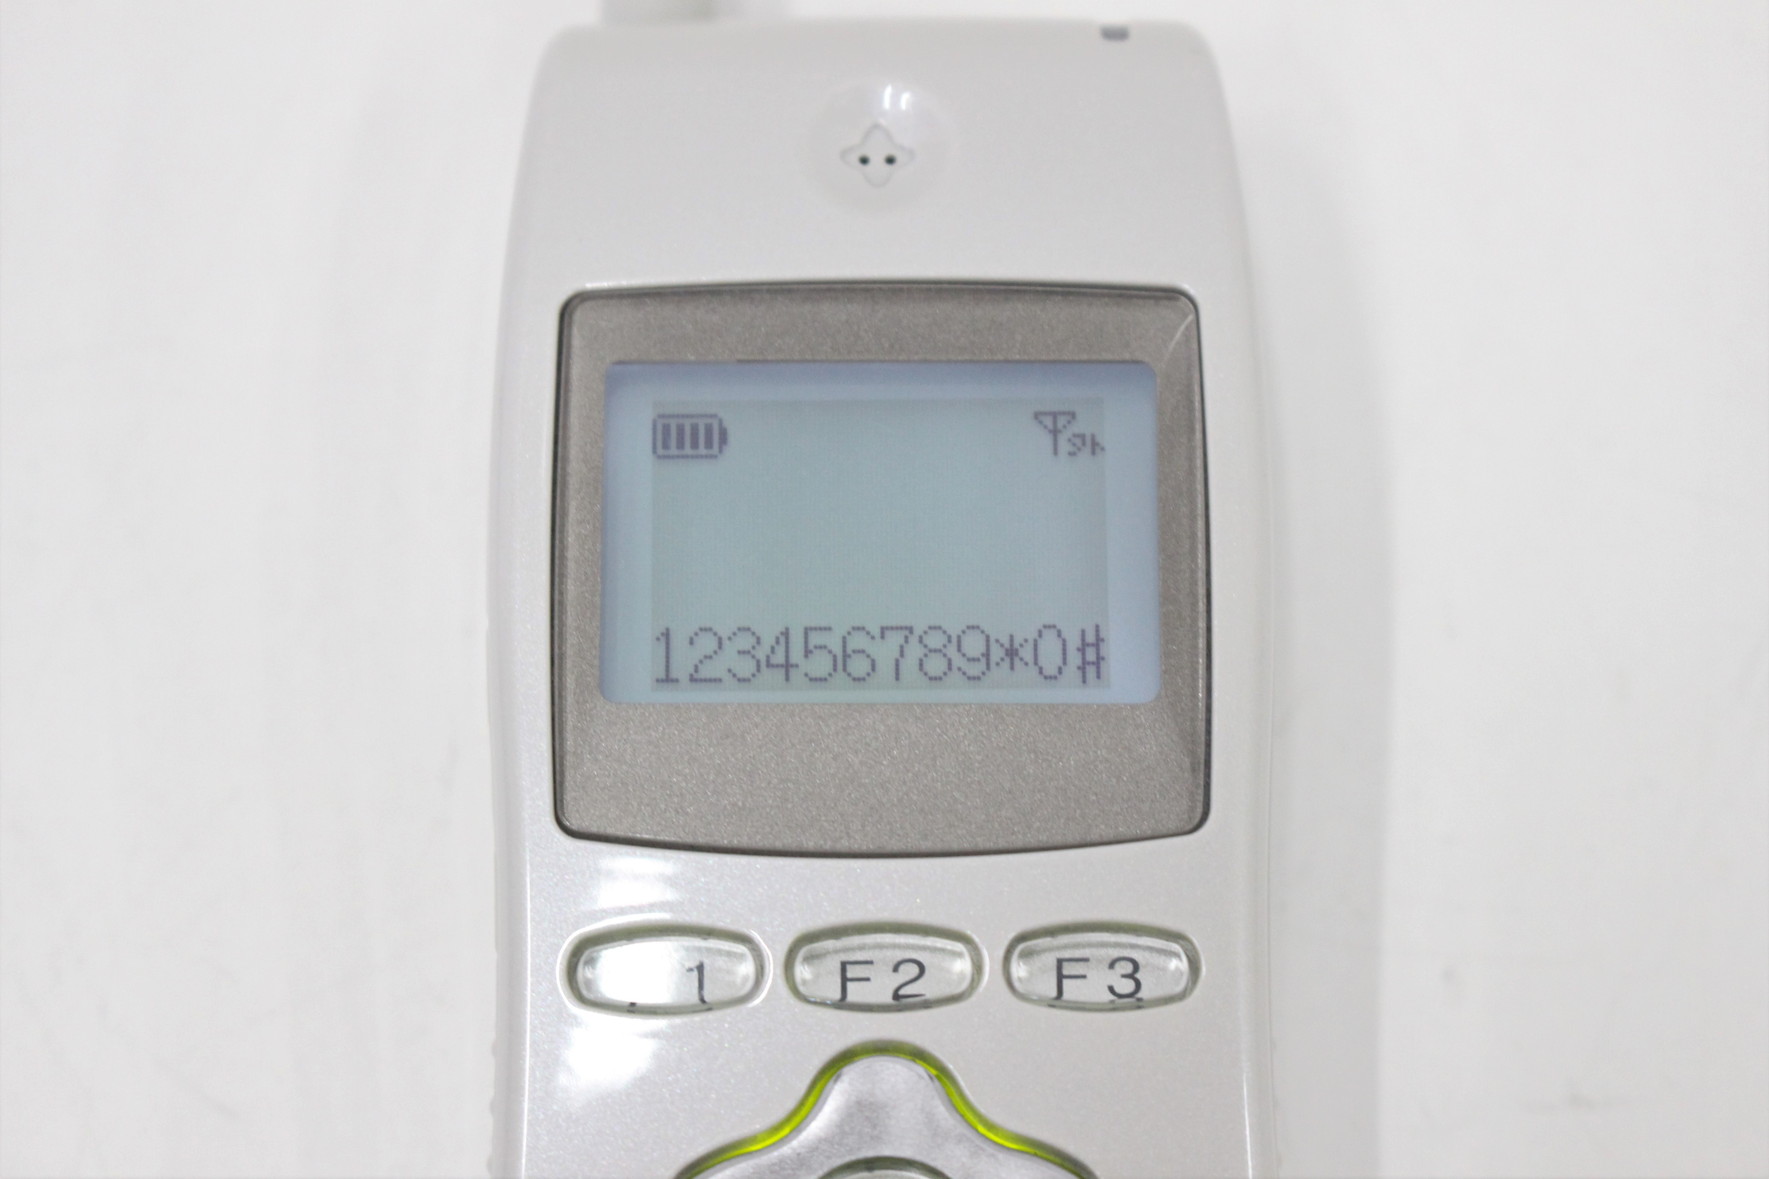 UM7700-ホンタイ/NB　saxa/サクサ製　PLATIA用デジタルシステムコードレス電話機